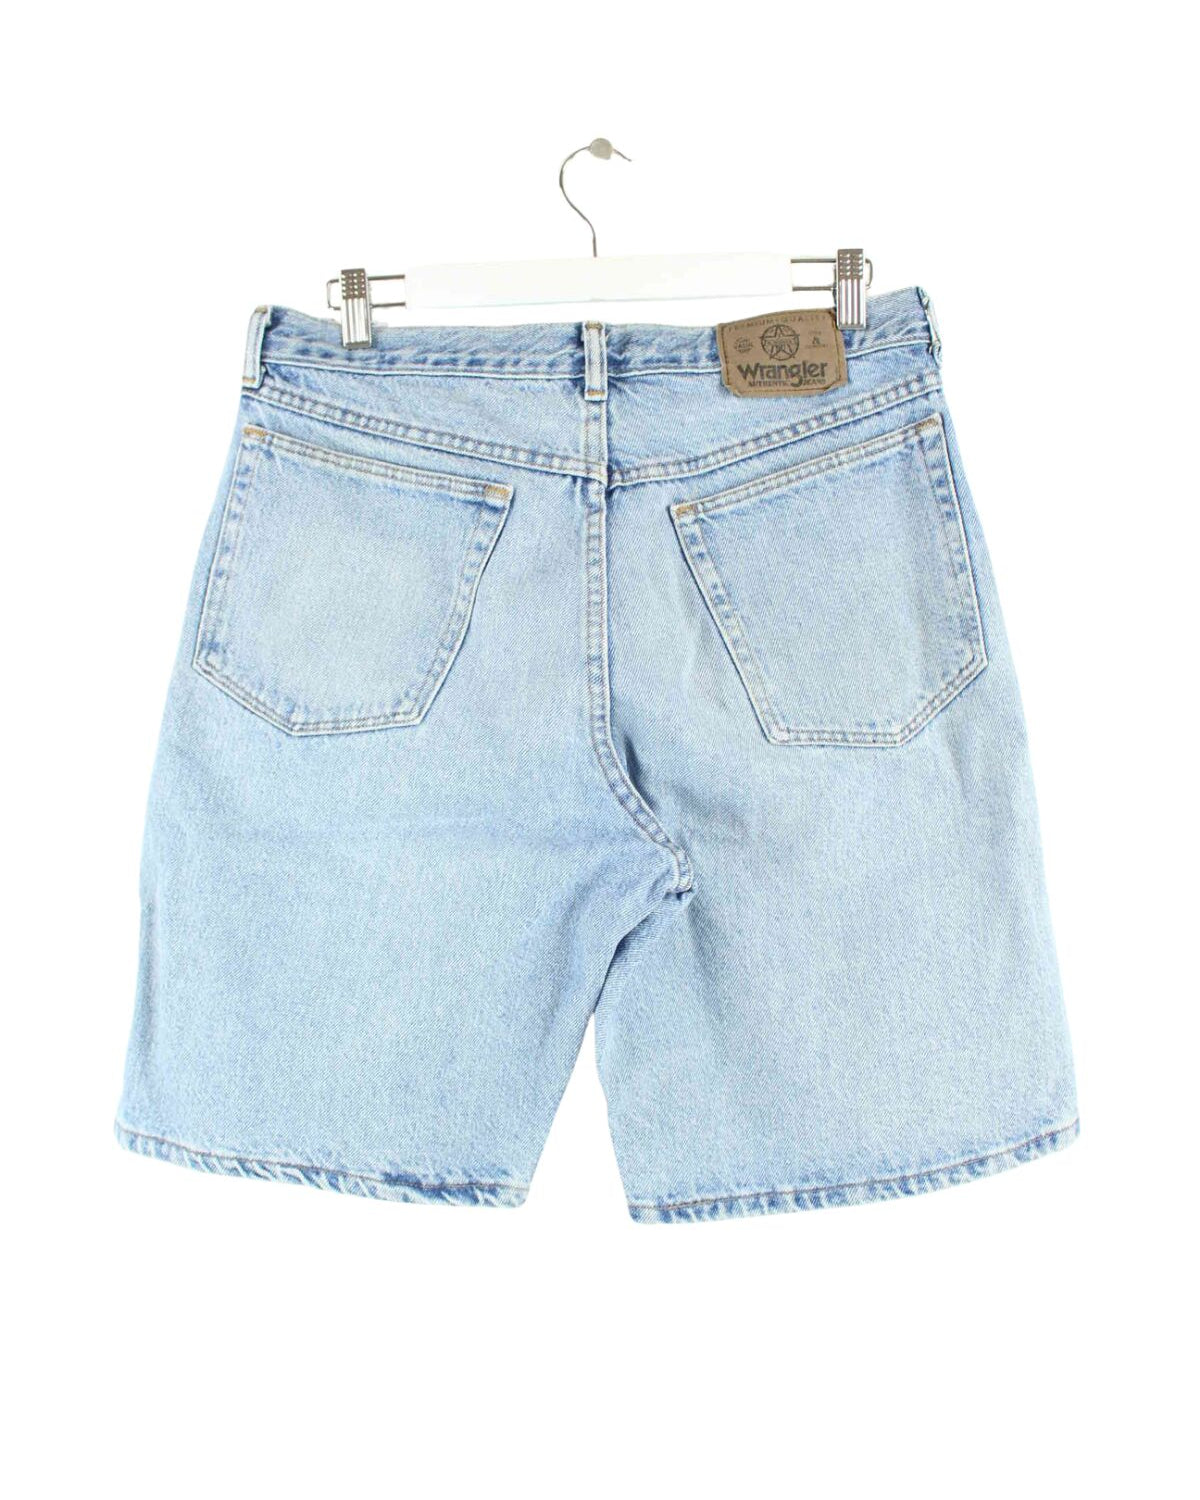 Wrangler Jorts / Jeans Shorts Blau  (back image)